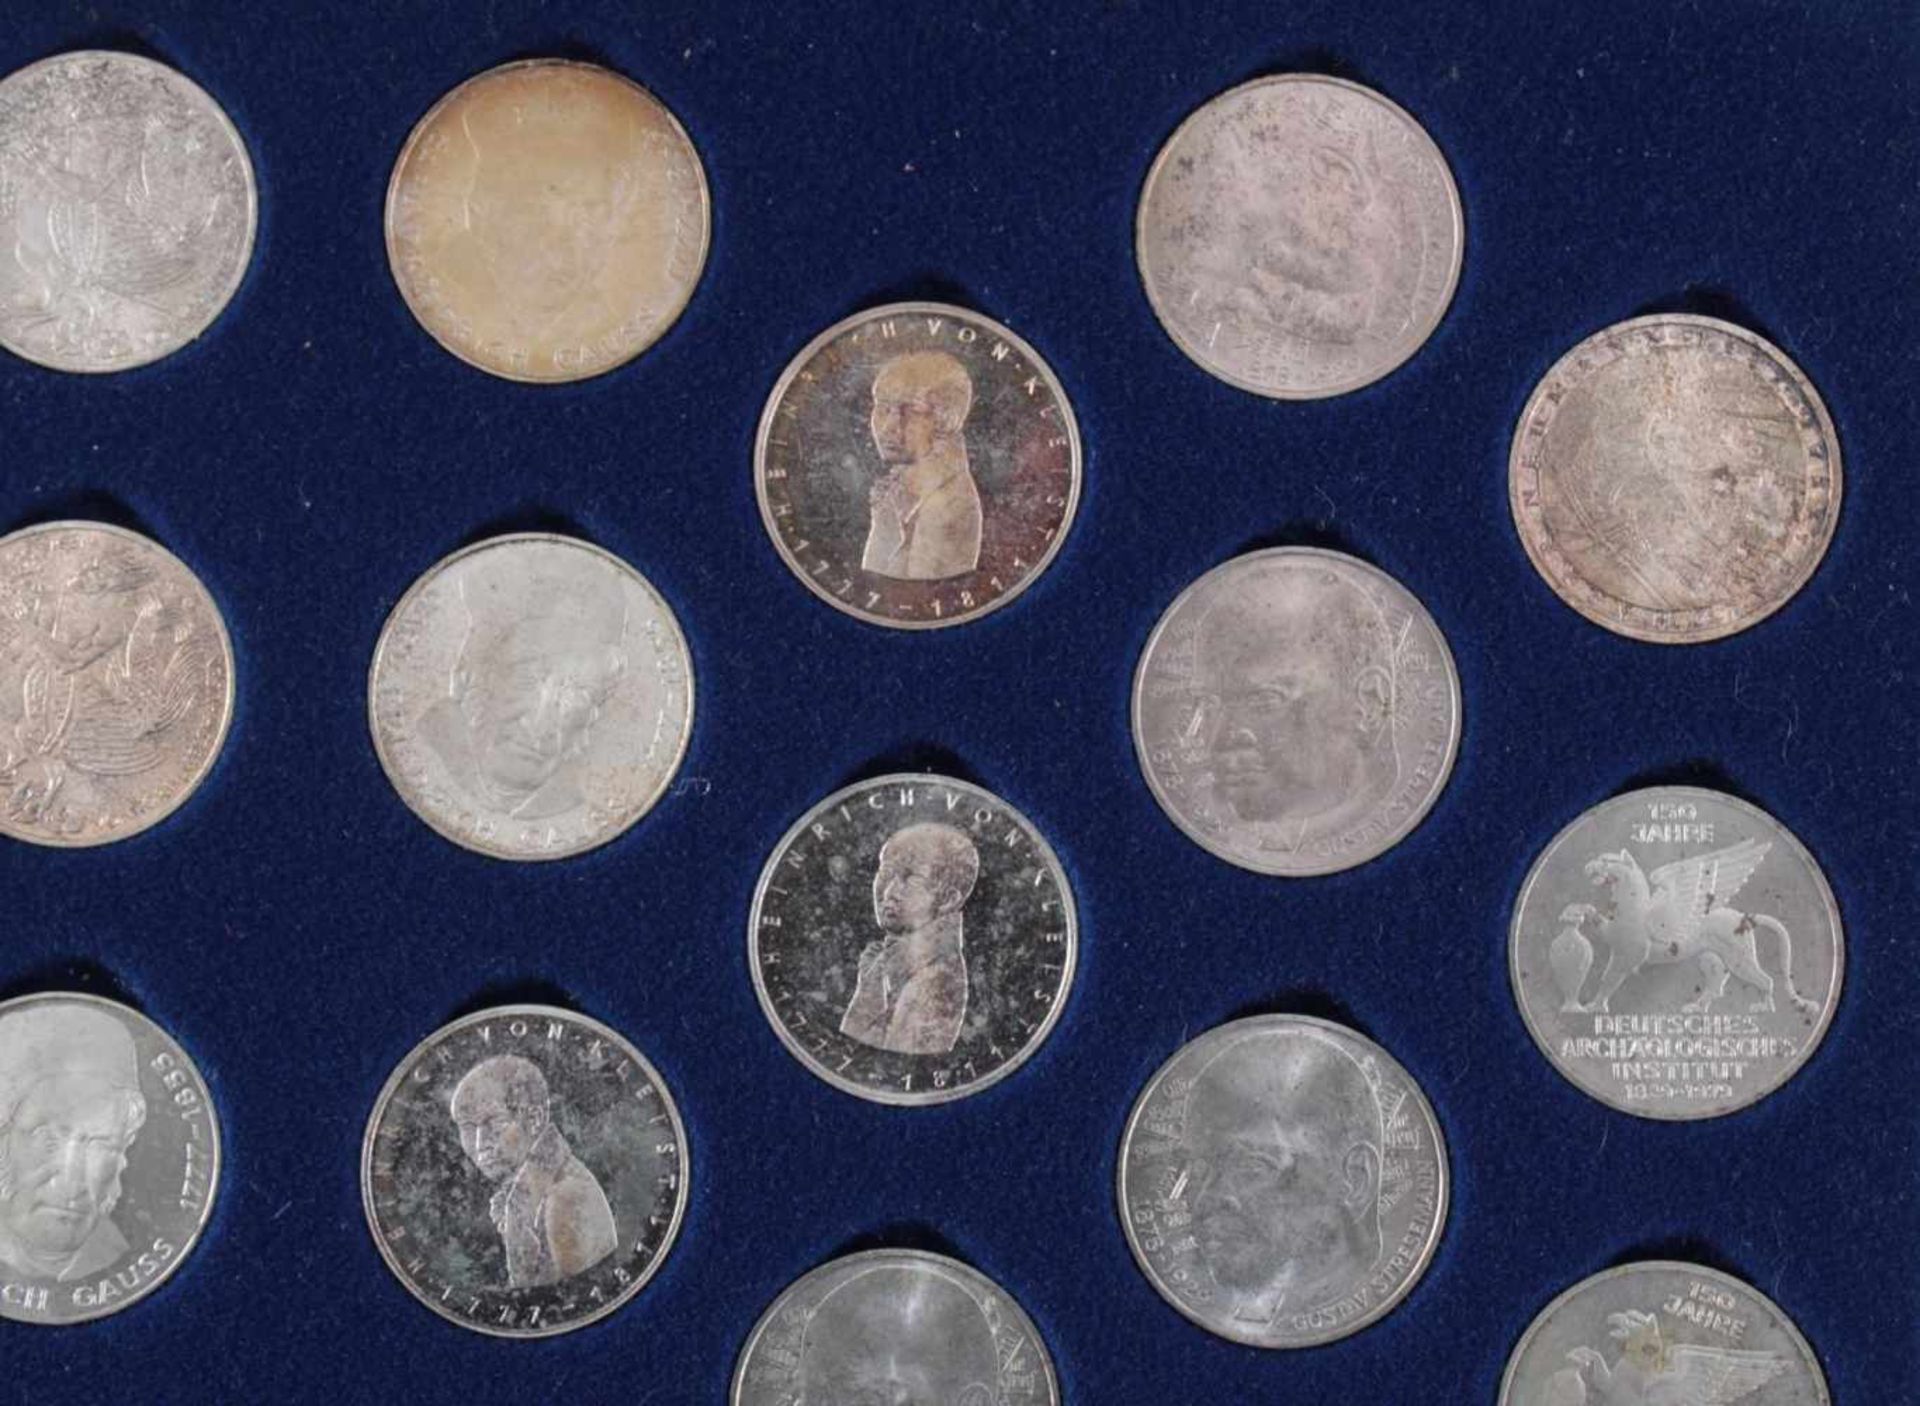 5 DM Sammlung Gedenkmünzen von 1951 bis 197470 Münzen in original Sammelbox - Image 3 of 7